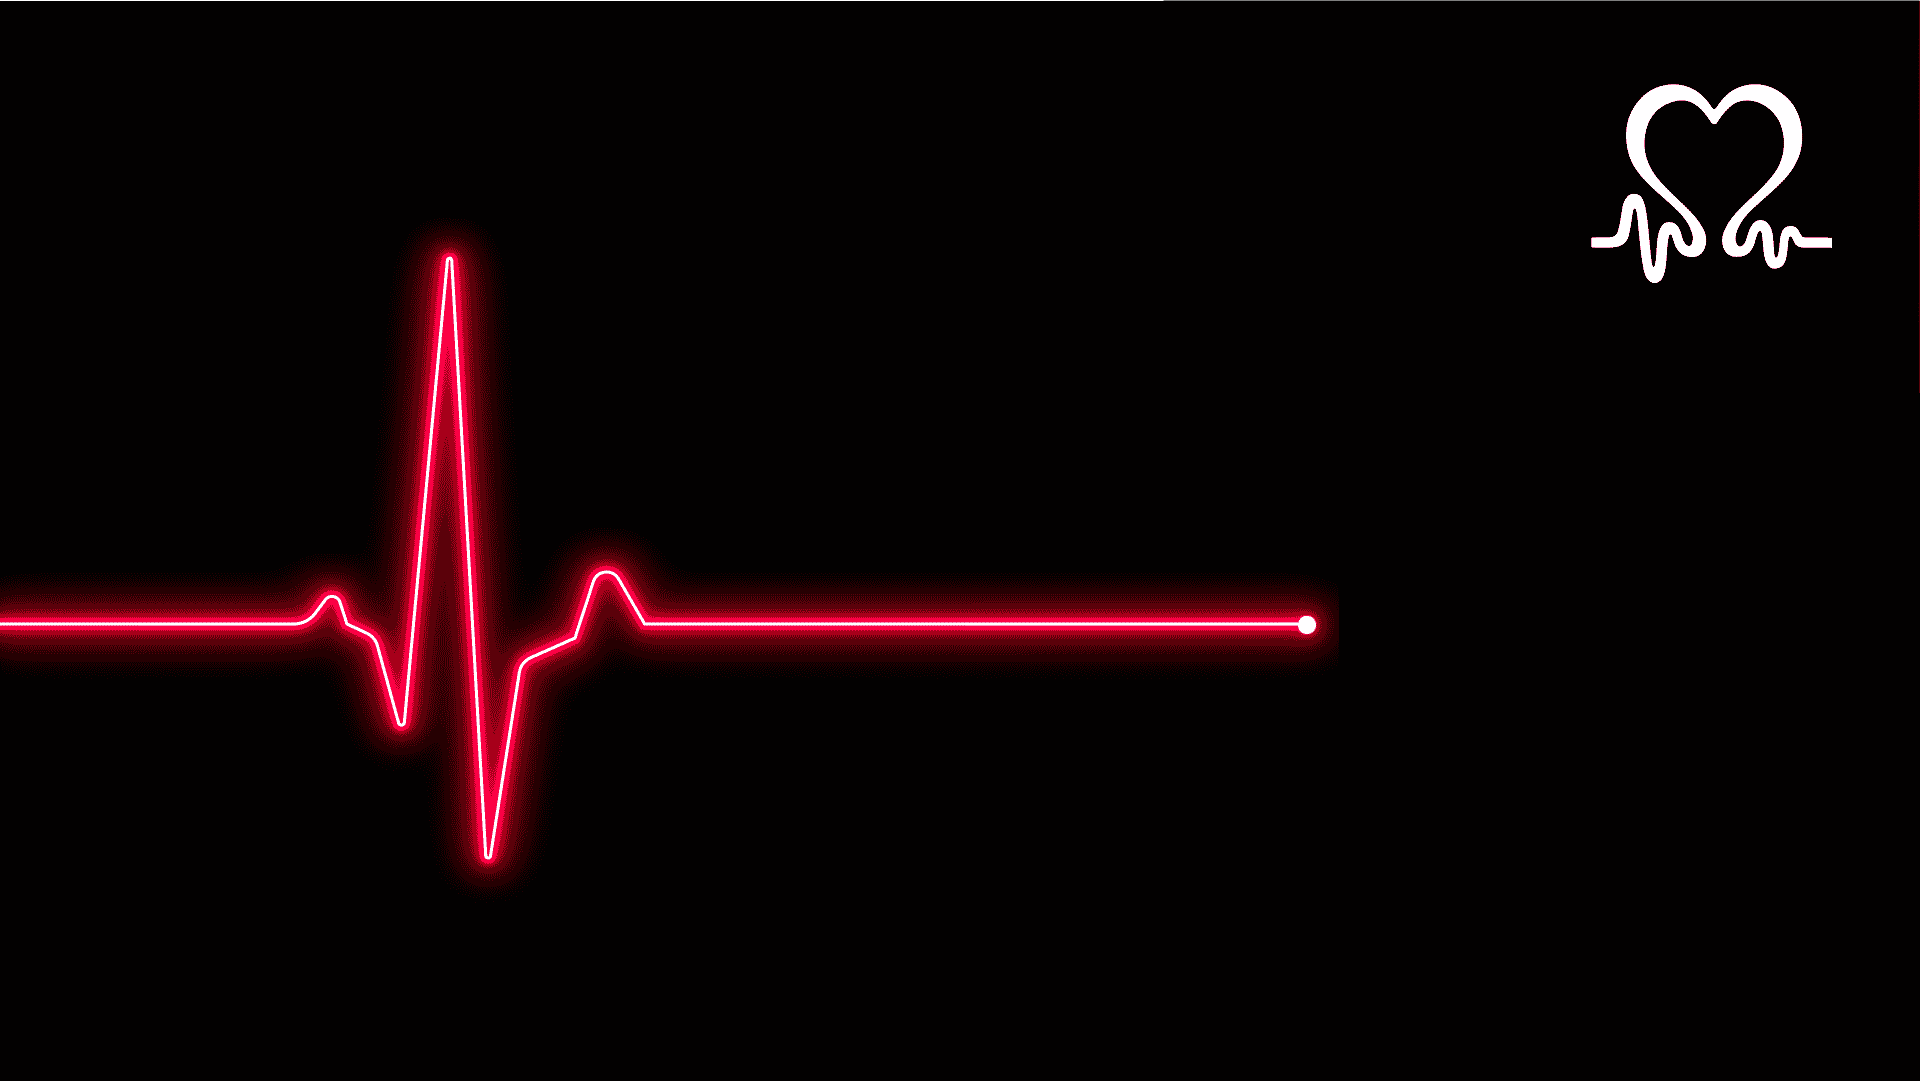 Ав пульс обновить. Сердцебиение на черном фоне. Пульсации на темном фоне. Линия пульса на черном фоне. Красная кардиограмма на черном фоне.